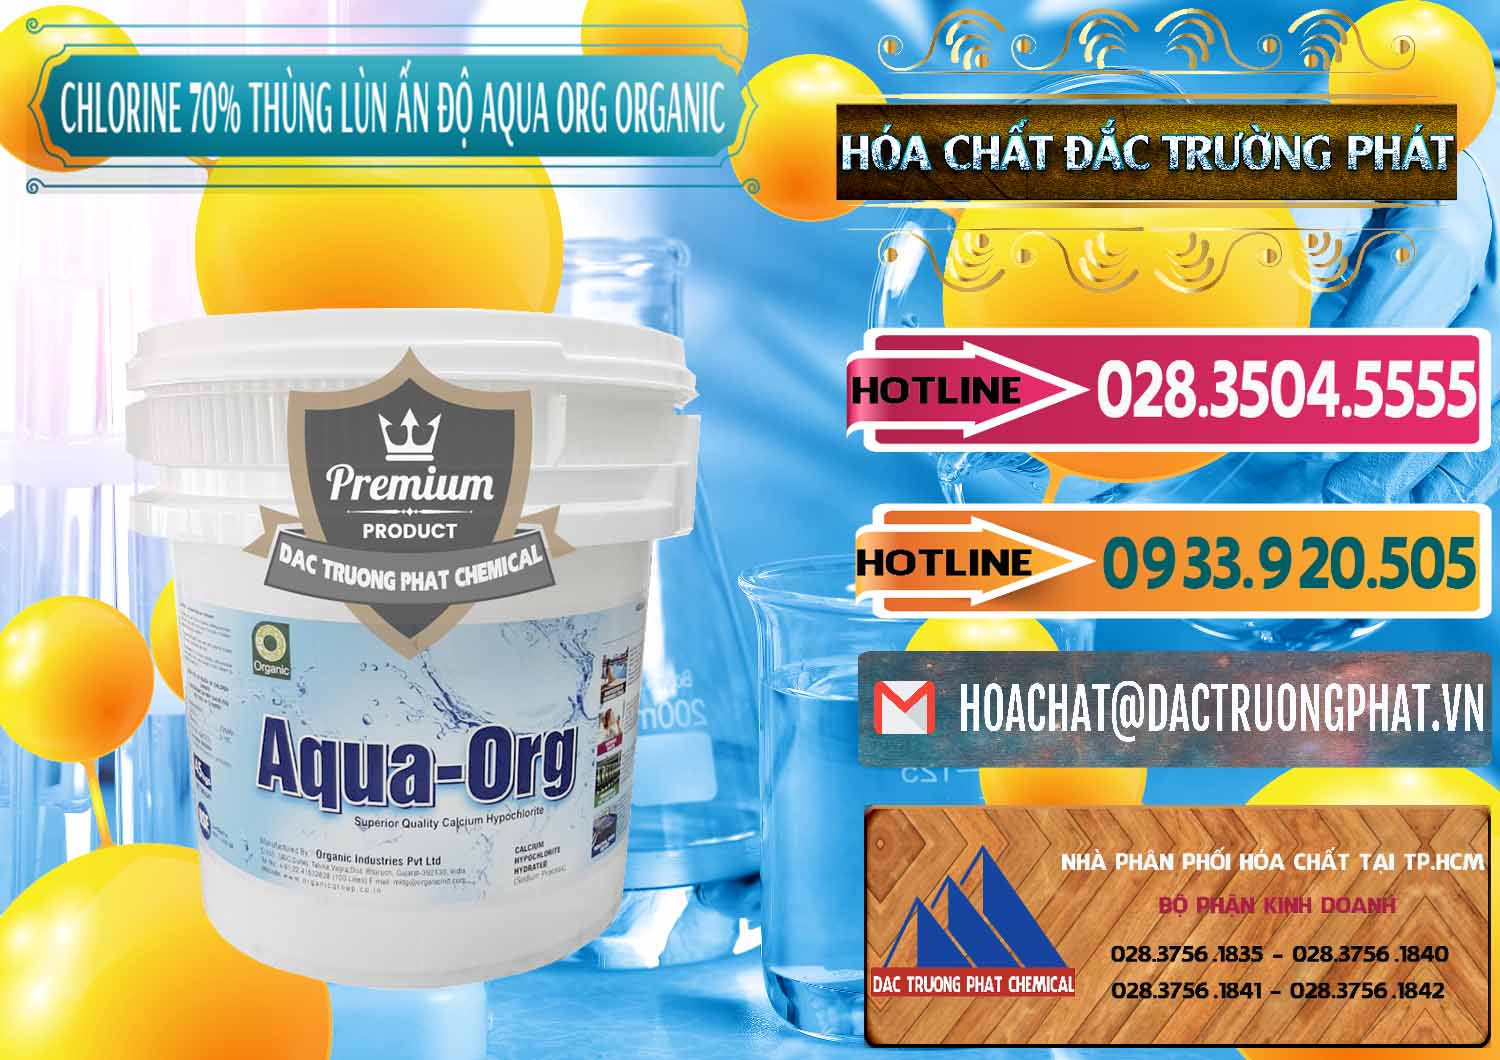 Công ty bán & cung cấp Chlorine – Clorin 70% Thùng Lùn Ấn Độ Aqua ORG Organic India - 0212 - Chuyên kinh doanh và cung cấp hóa chất tại TP.HCM - dactruongphat.vn